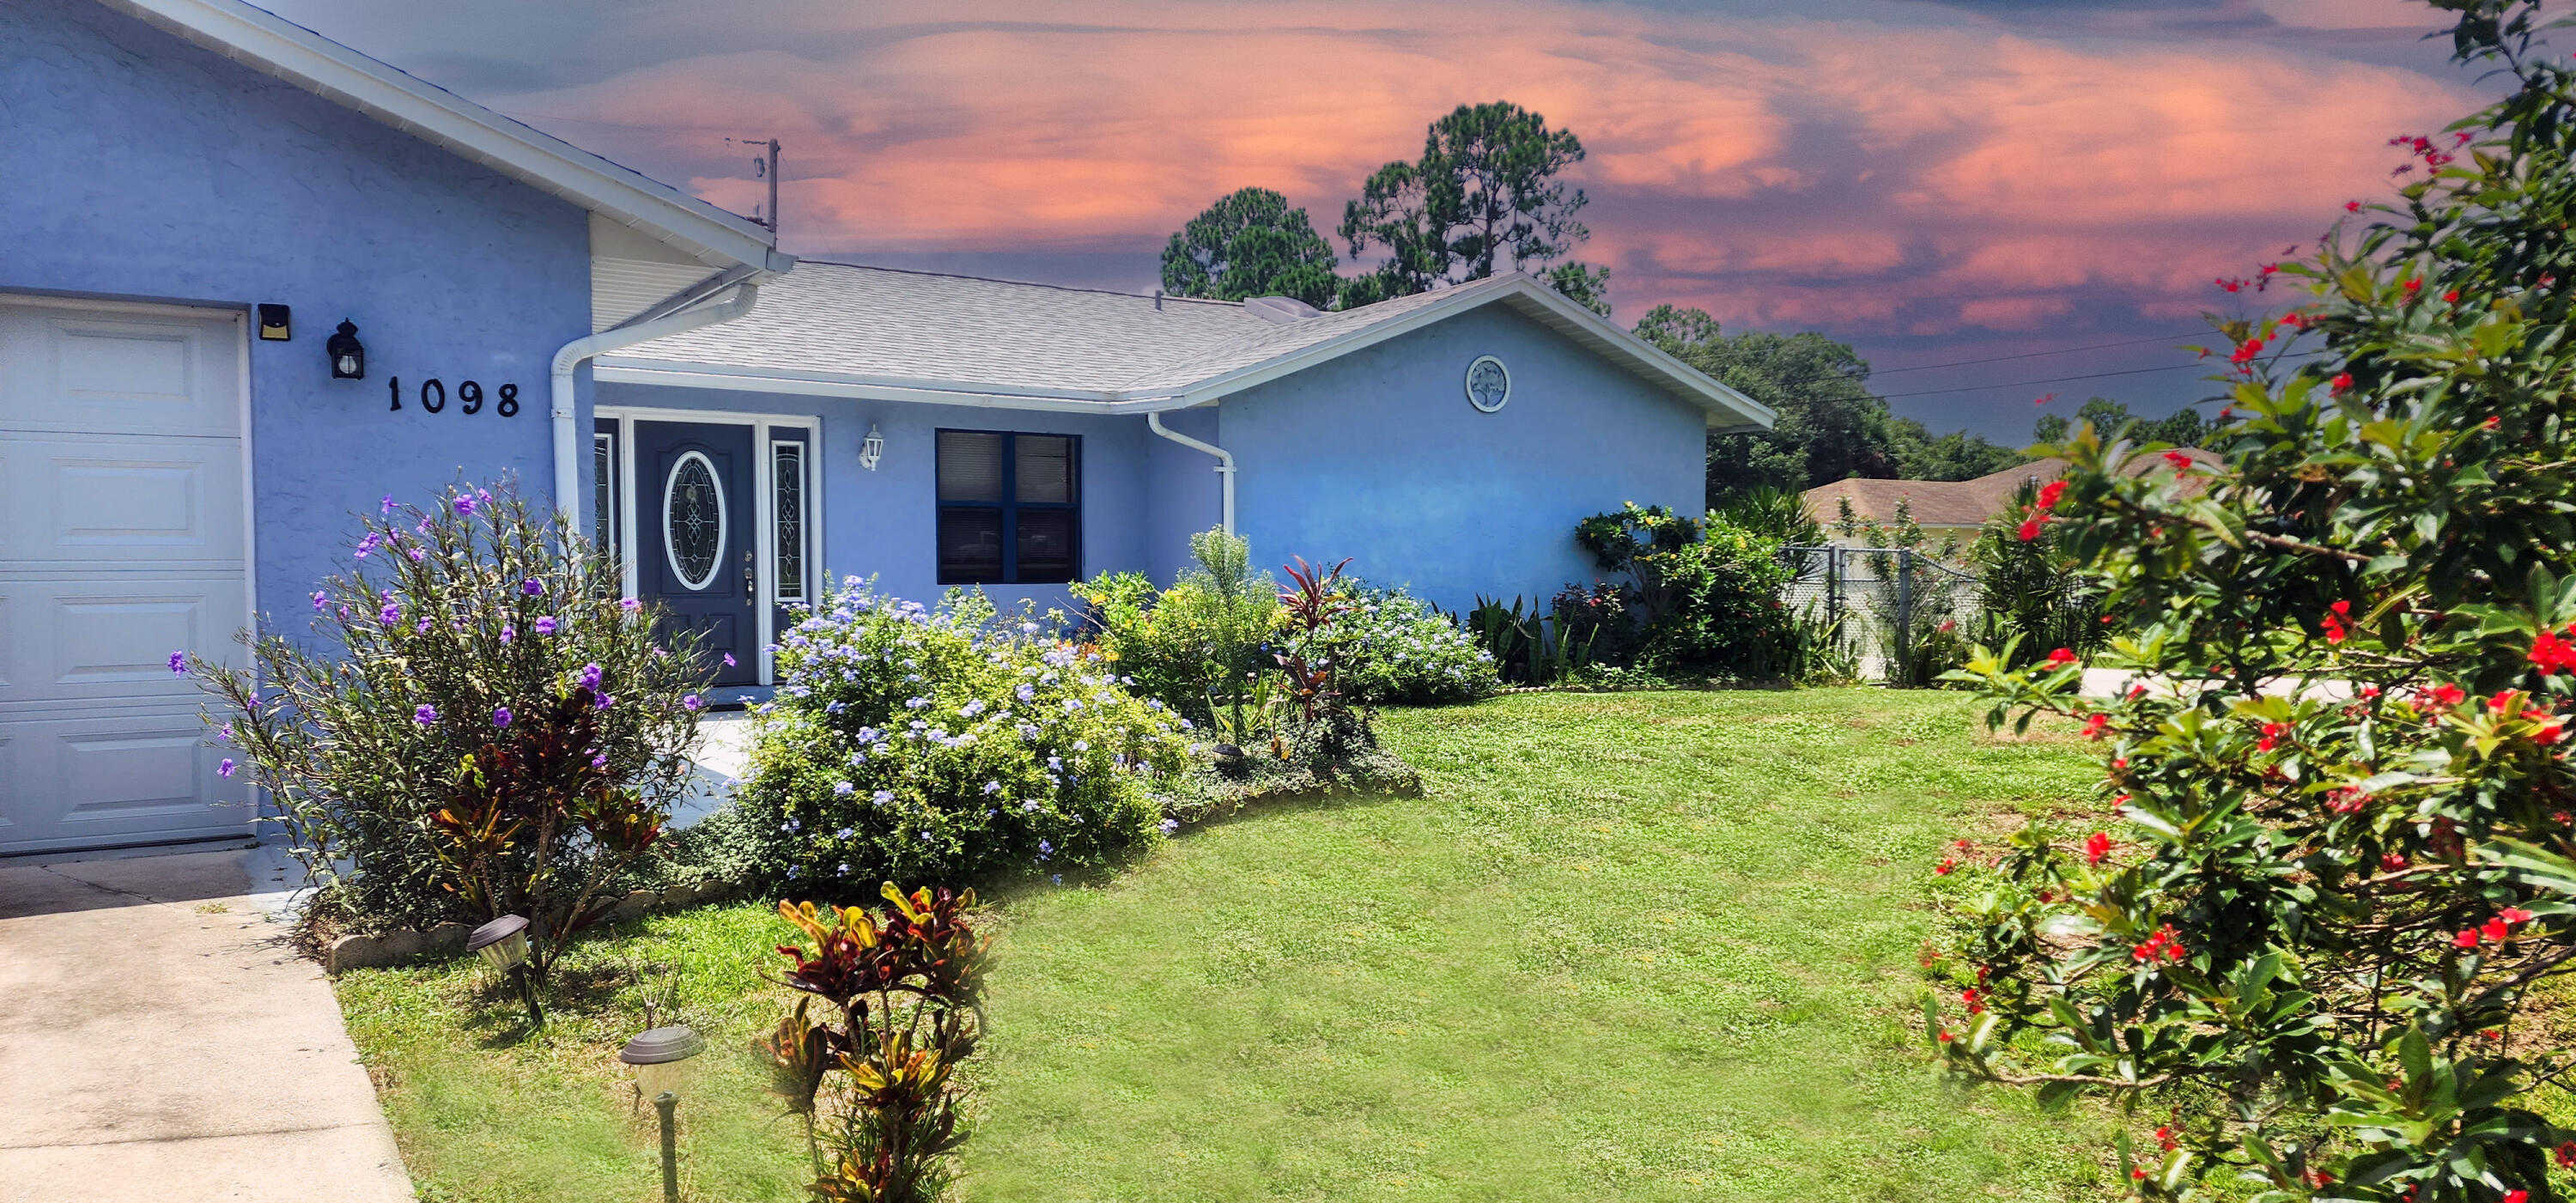 View Port Saint Lucie, FL 34953 house